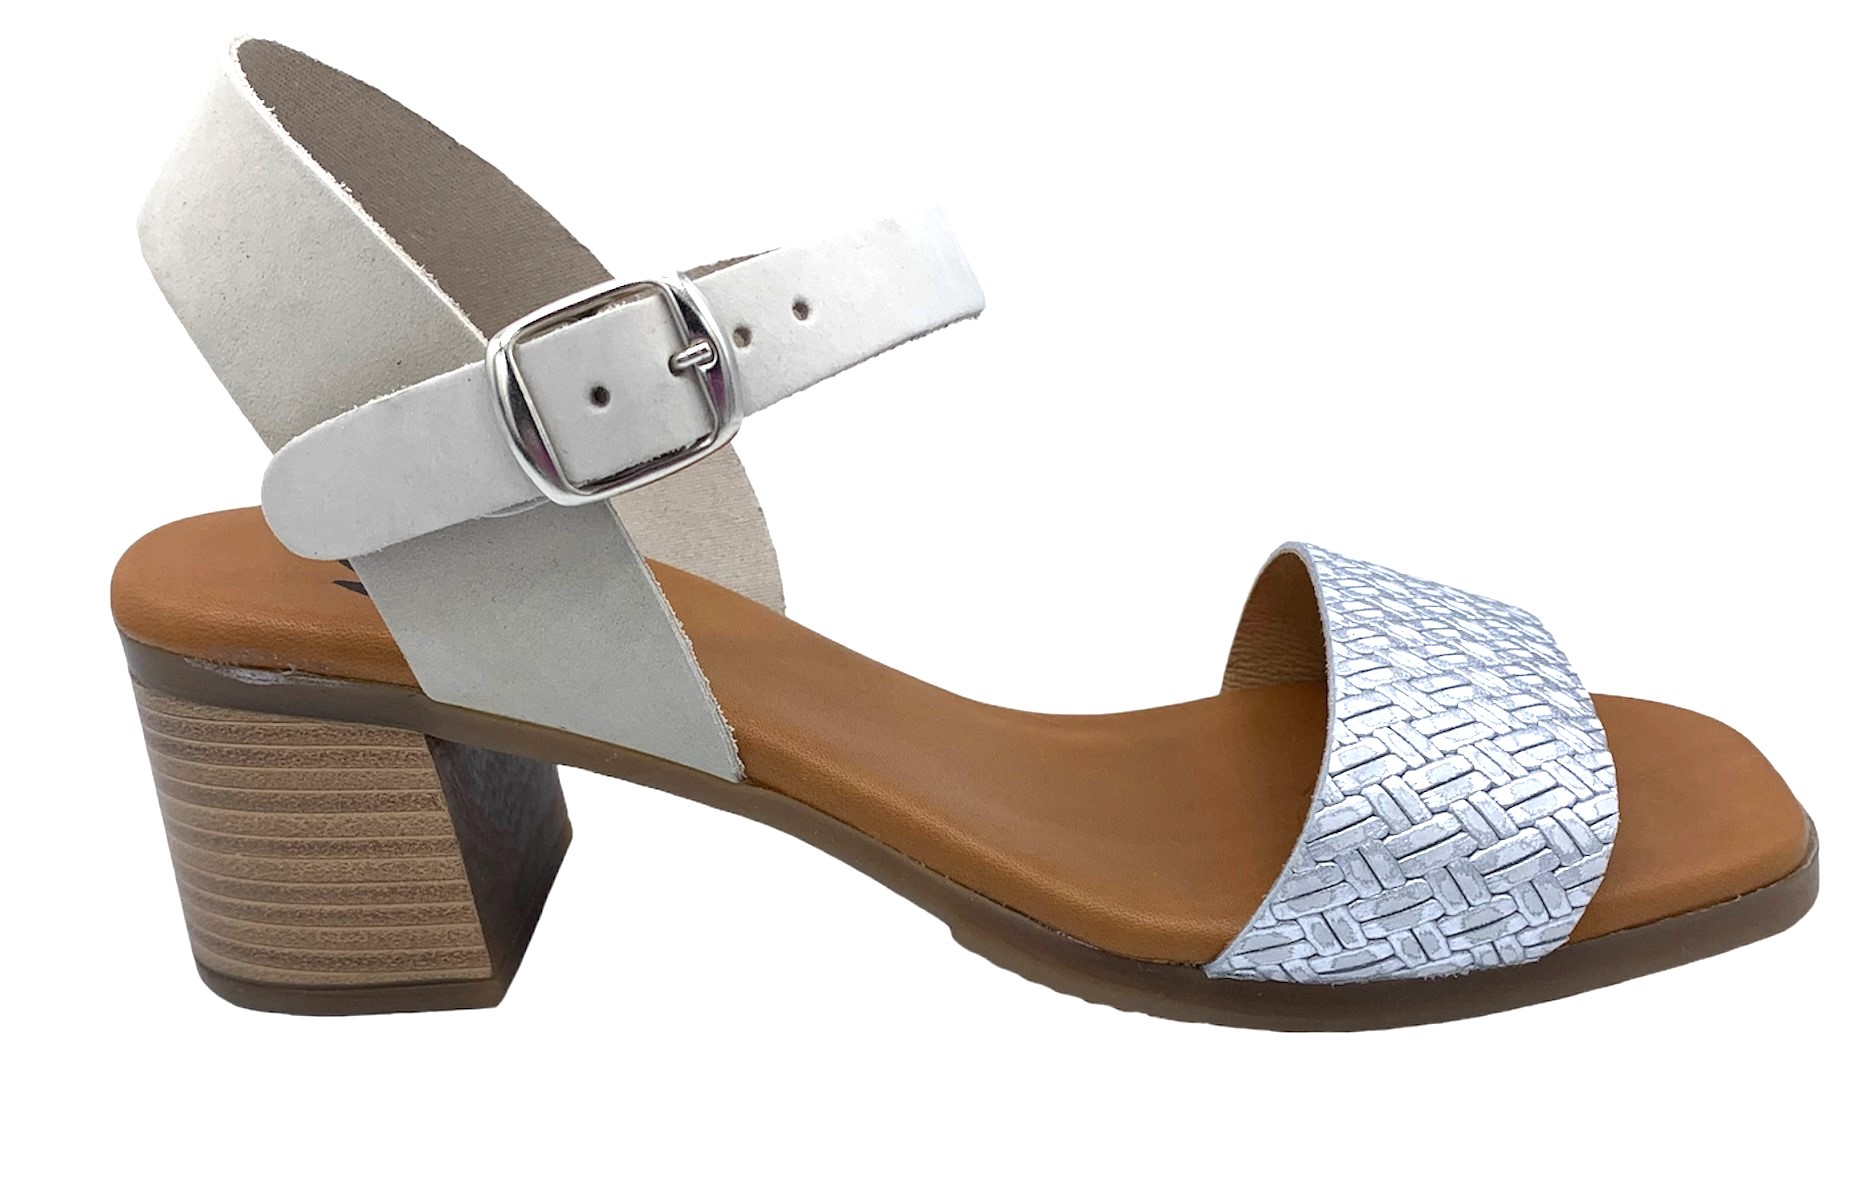 Dámské kožené sandále na podpatku MISSTIC 116004 sv.šedé Velikost: 36 (EU)